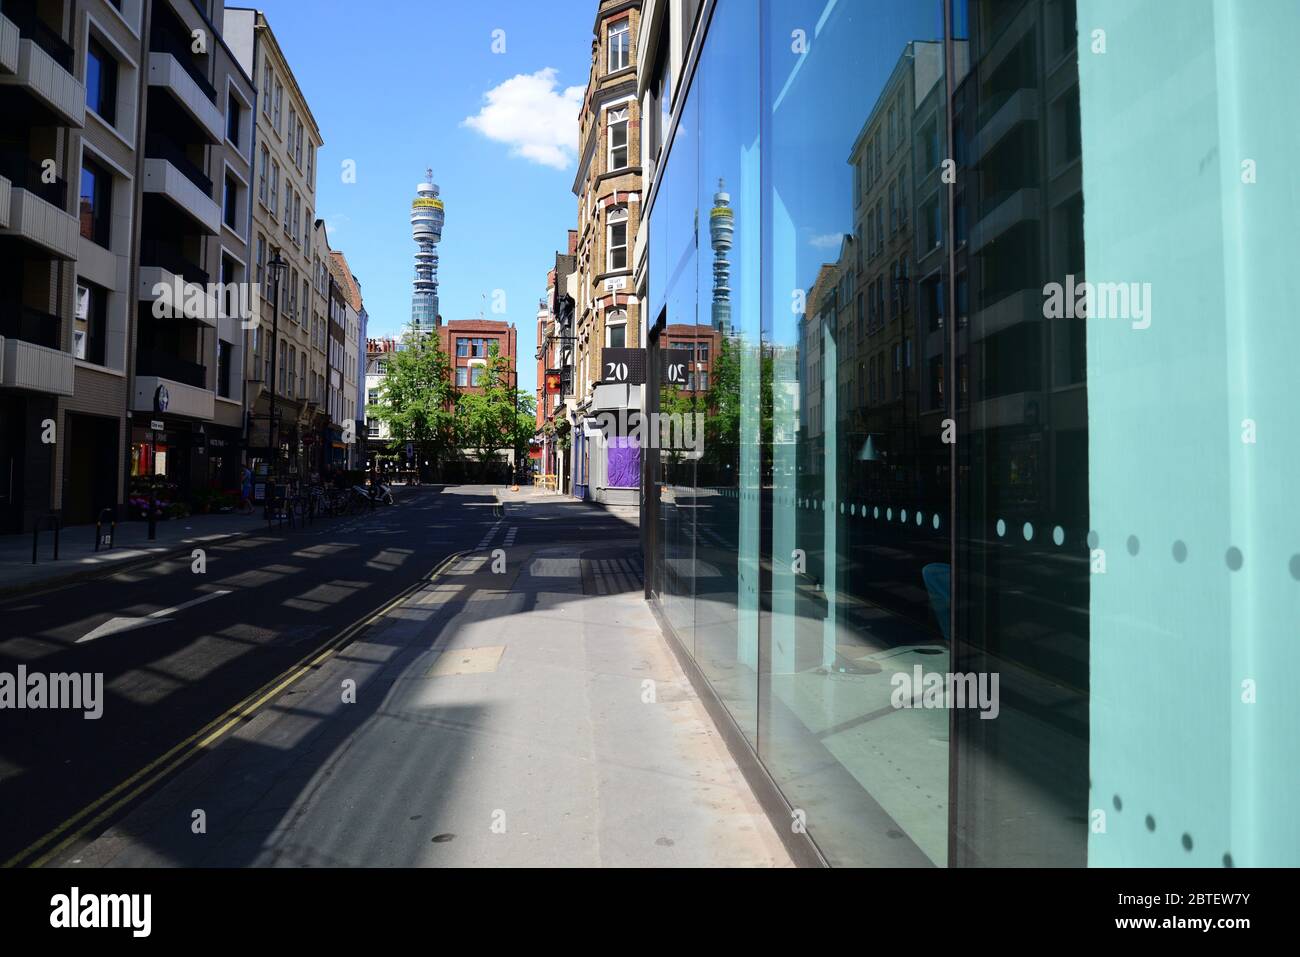 Vider Rathbone place, Fitzrovia avec la Tour de poste en vue, Londres, pendant le Londres Lockdown, à la suite de la pandémie du coronavirus de 2020 Banque D'Images